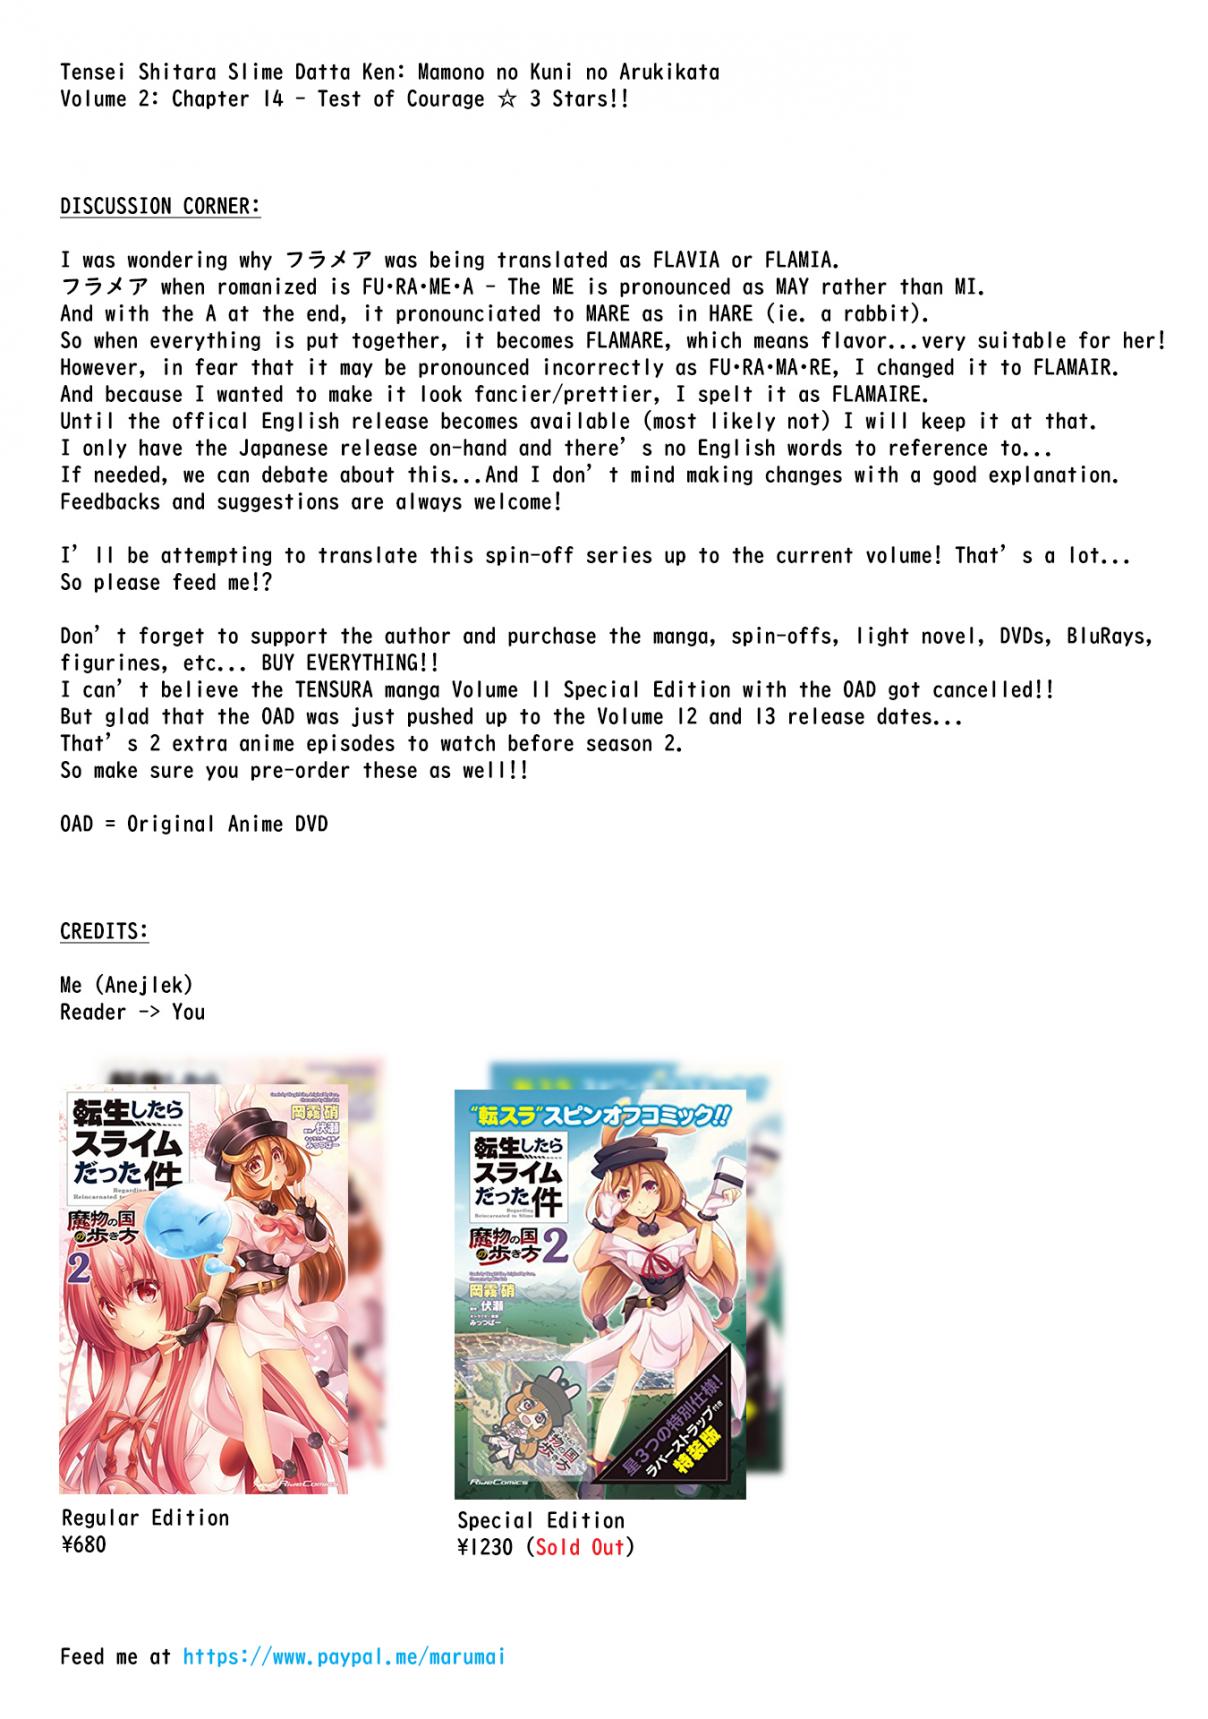 Tensei Shitara Slime Datta Ken: Mamono no Kuni no Arukikata Vol. 2 Ch. 14 Test of Courage ☆ 3 Stars!!